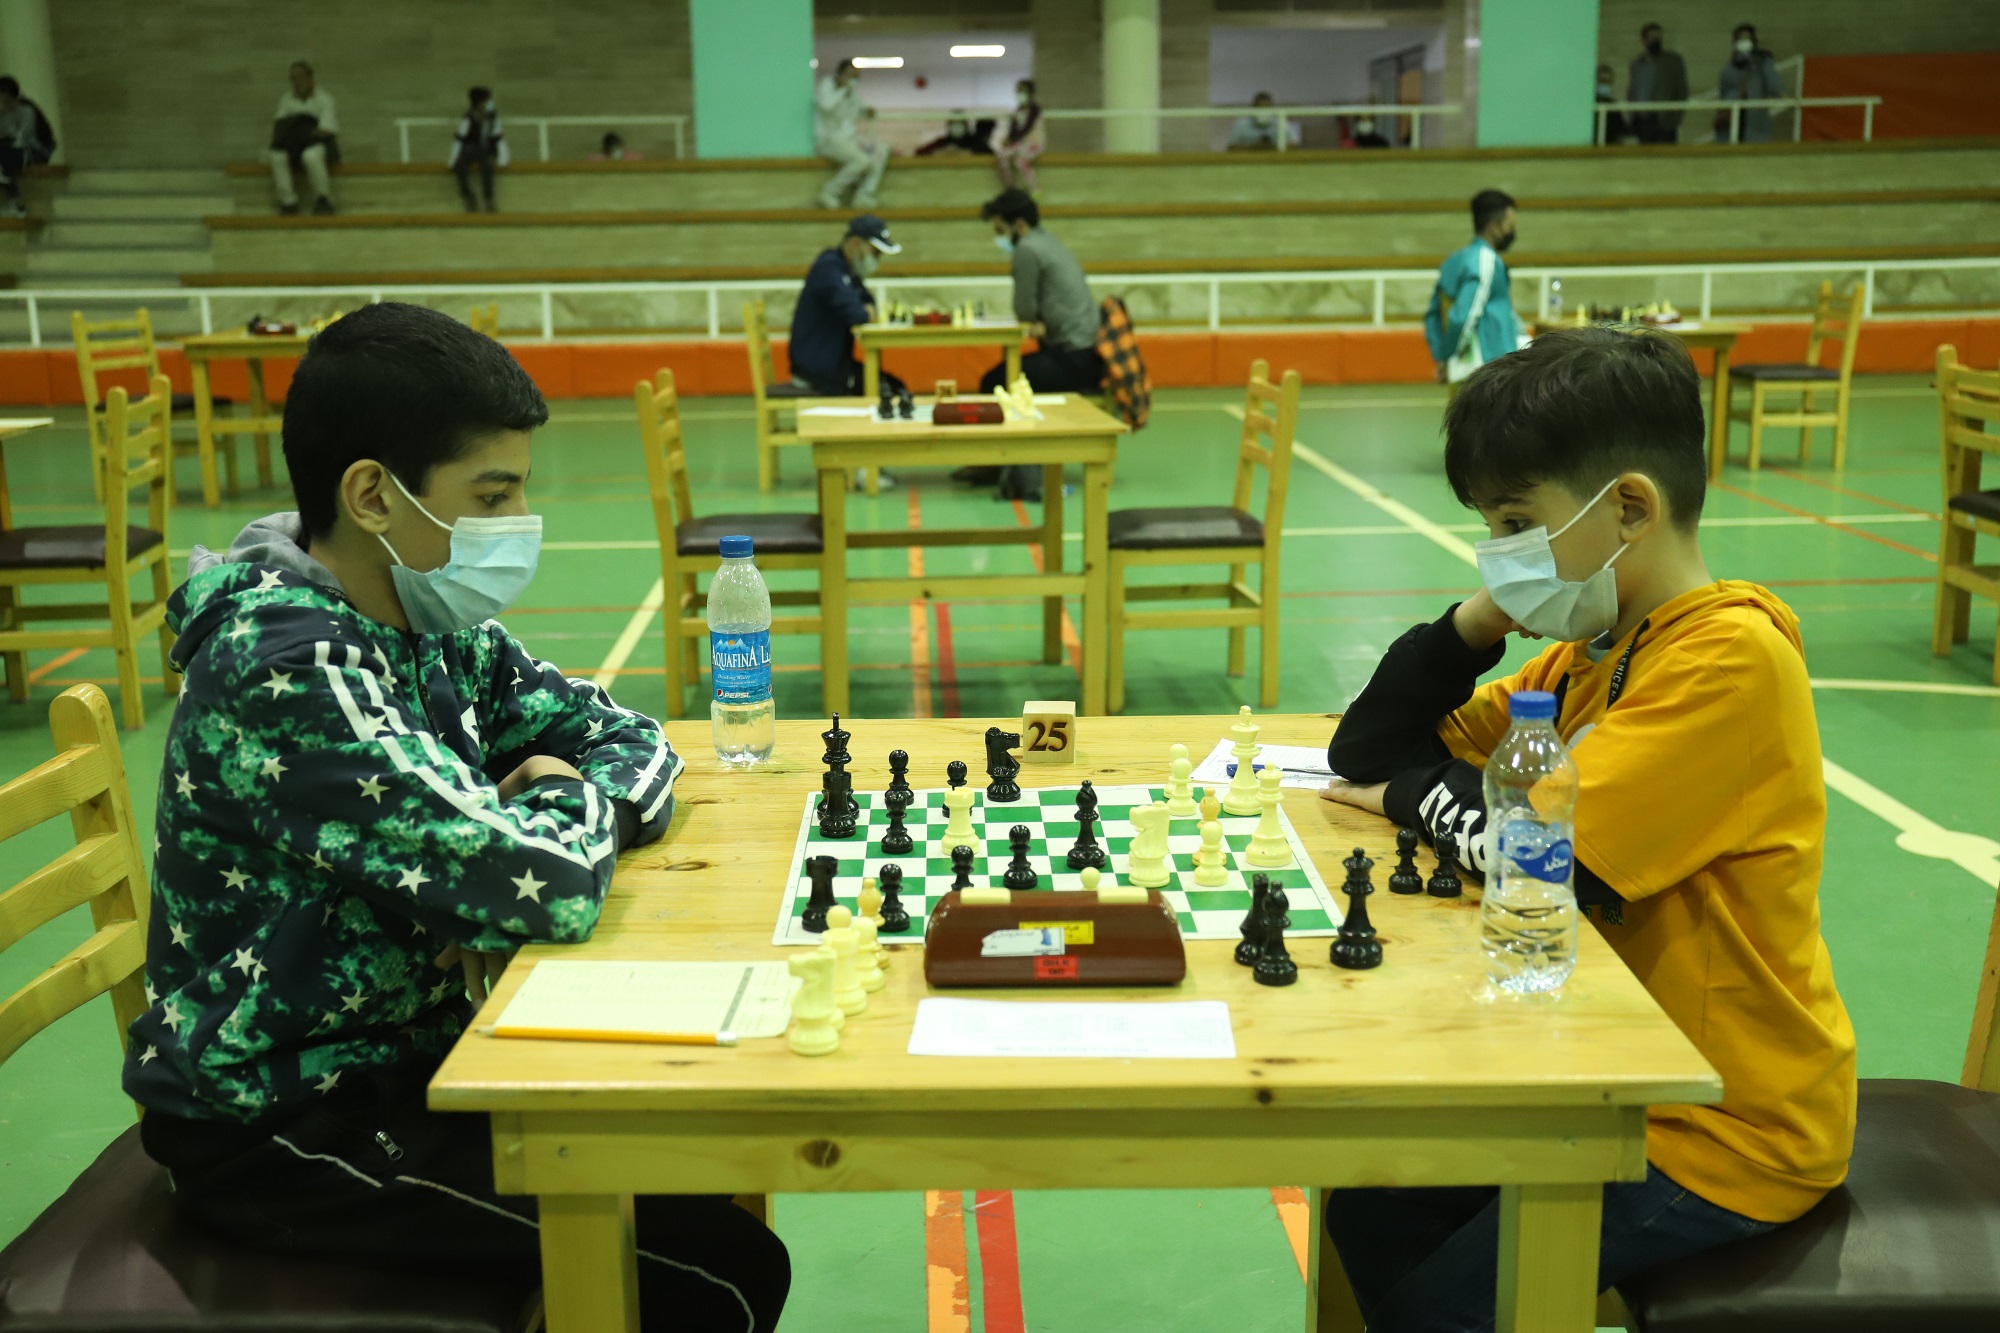 پایان ششمین دوره مسابقات استاندارد شطرنج کیش